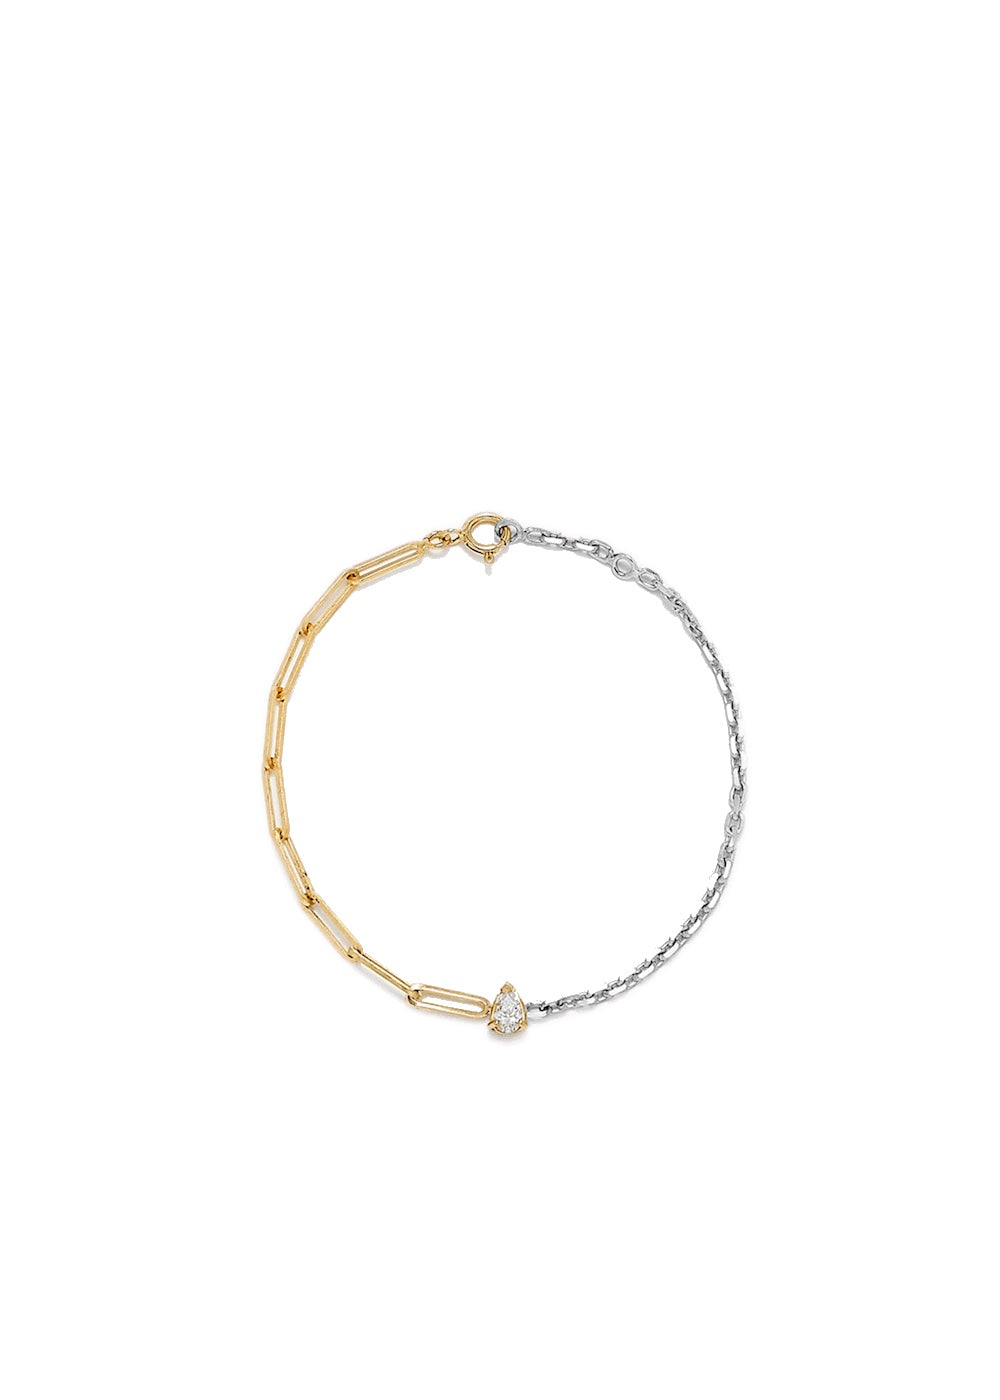 Solitaire Poire 18k gold diamond bracelet